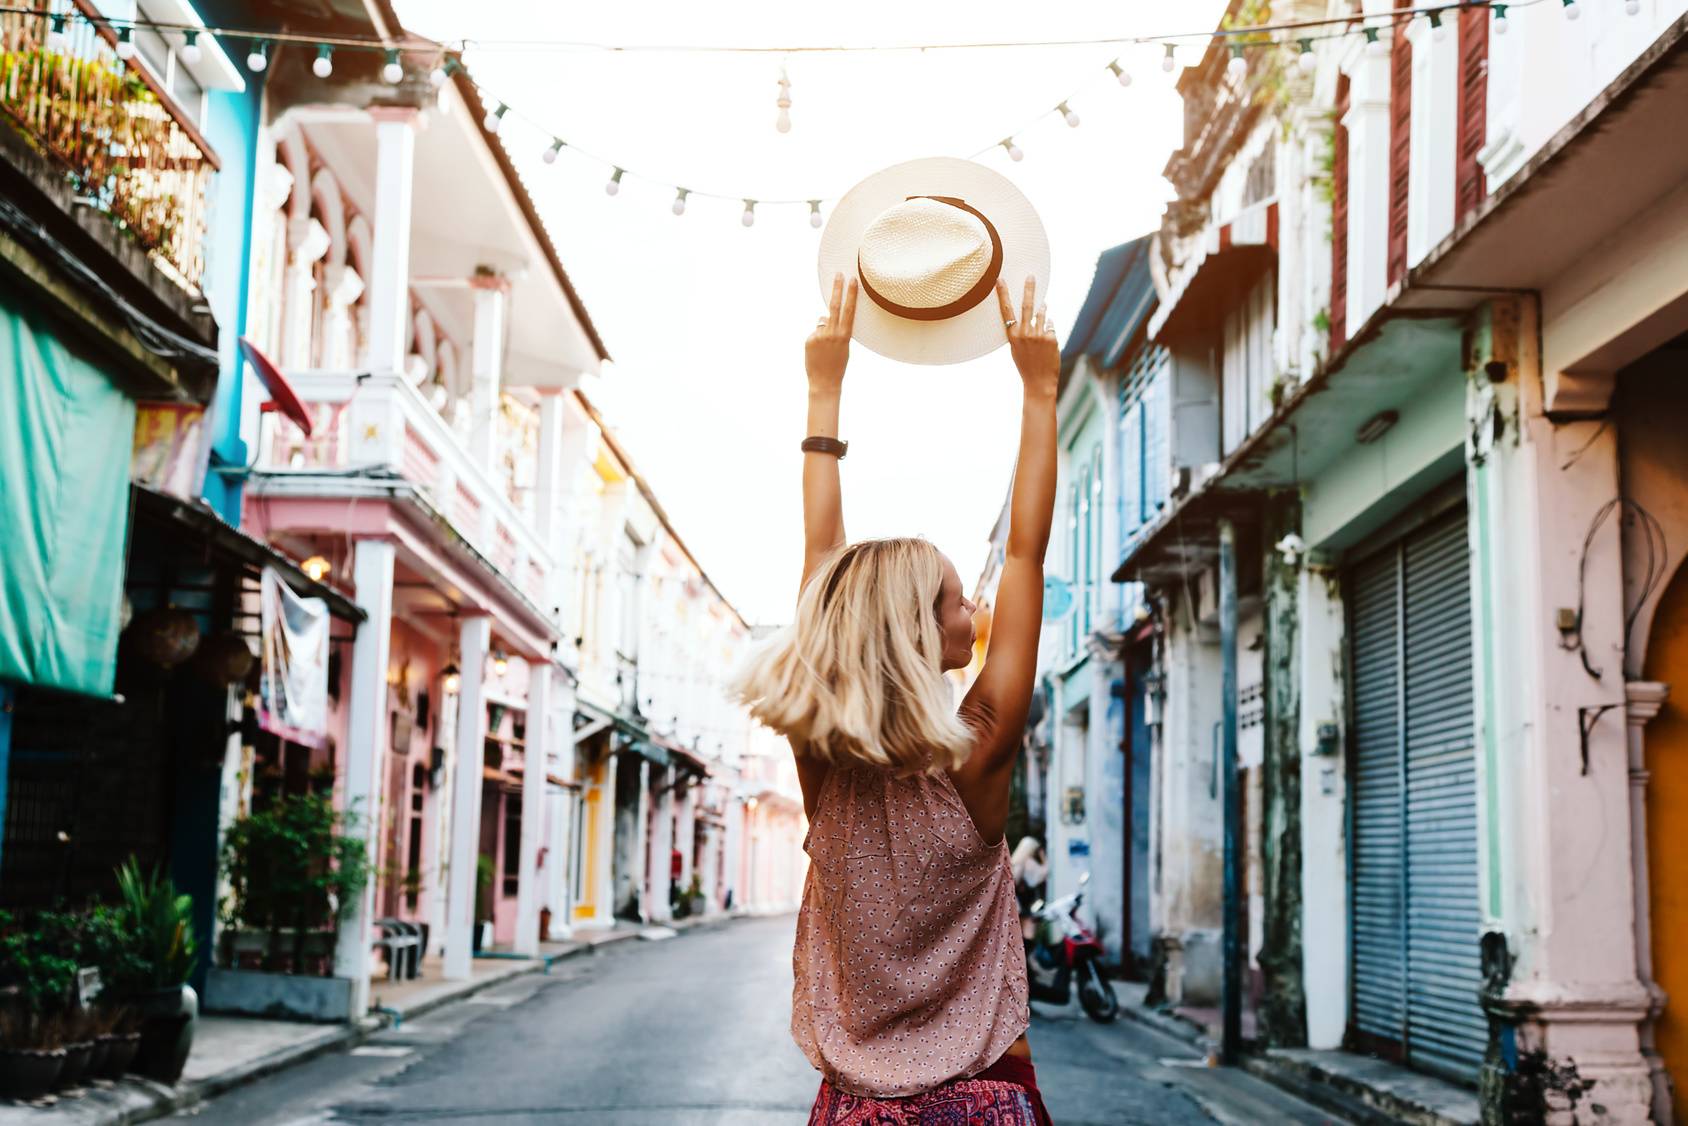 Witamina D pomaga schudnąć. Szczupła opalona blondynka spaceruje uliczkami Hawany i unosi w dłoniach ciały kapelusz chroniący przed słońcem.